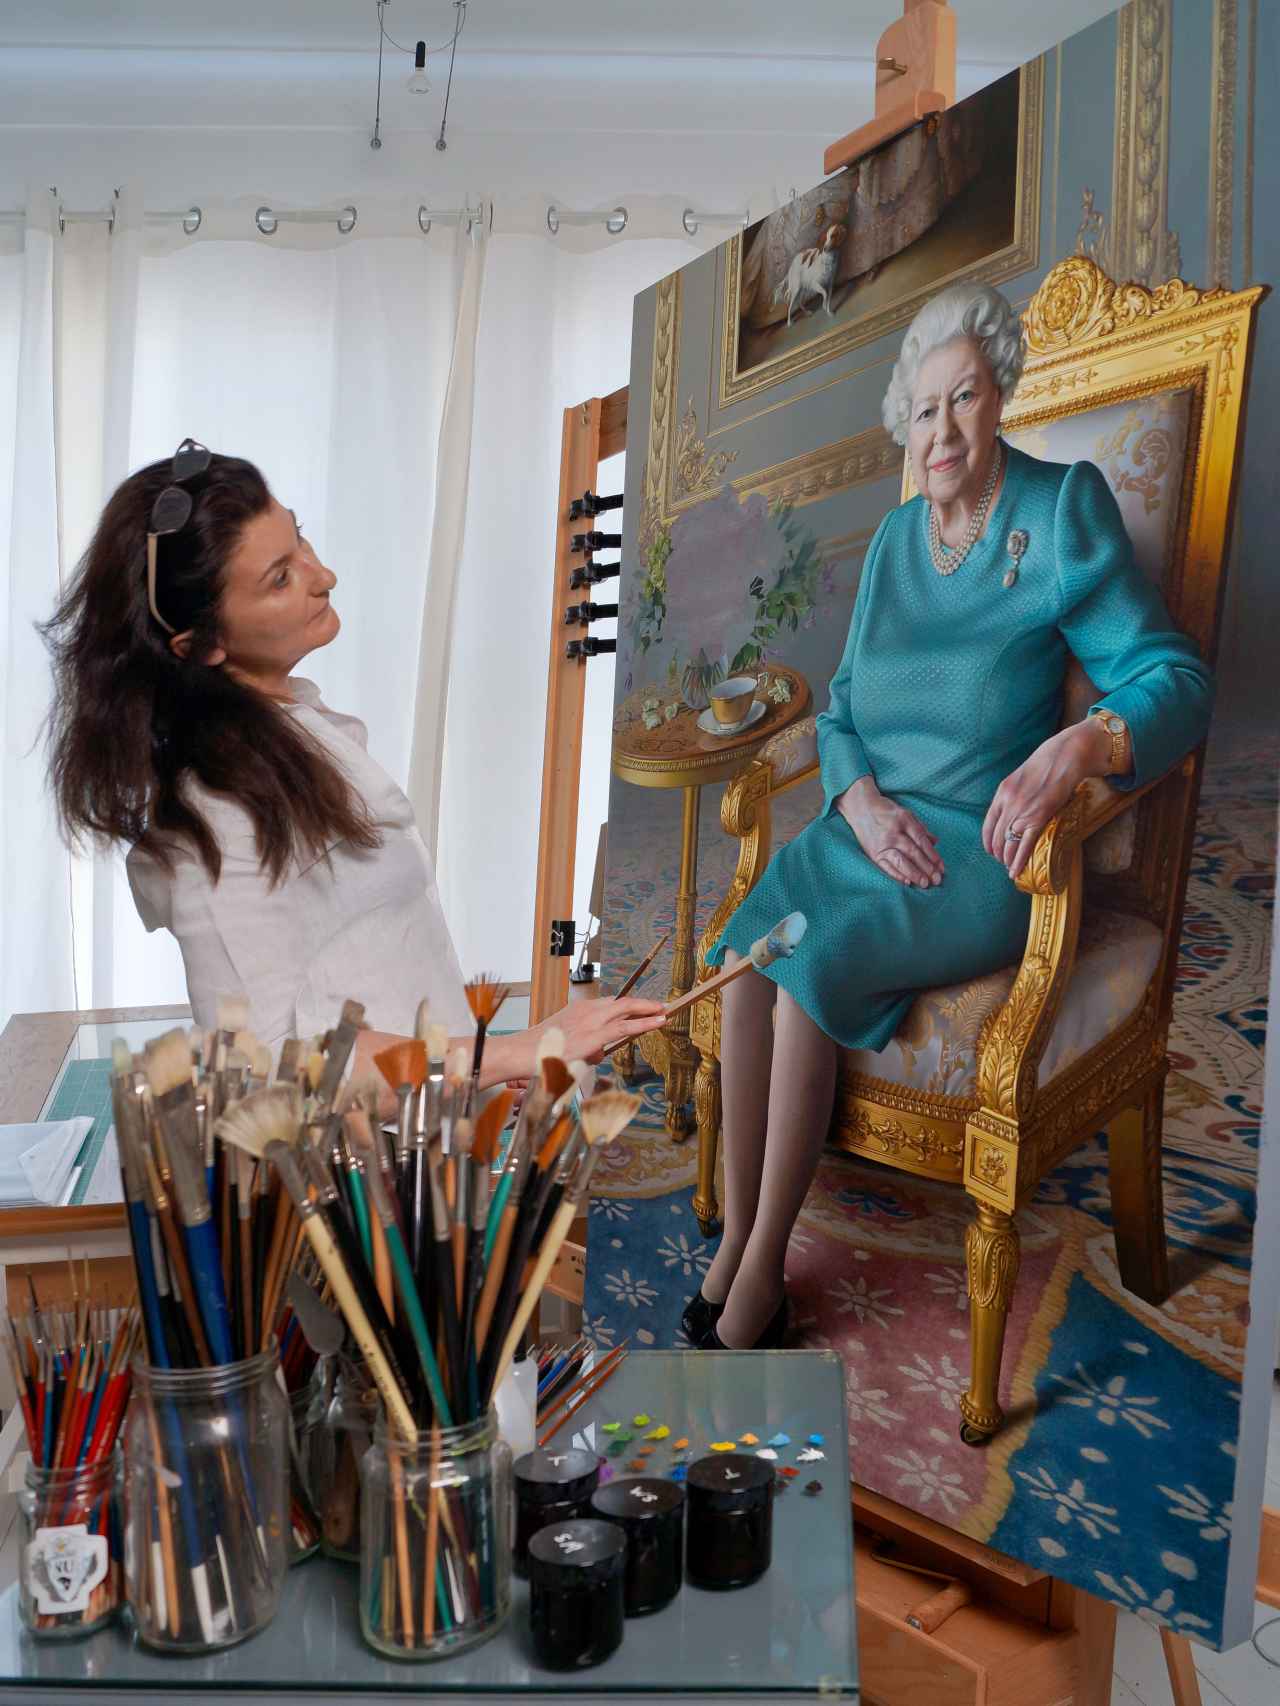 La artista, trabajando en el retrato de la soberana británica.